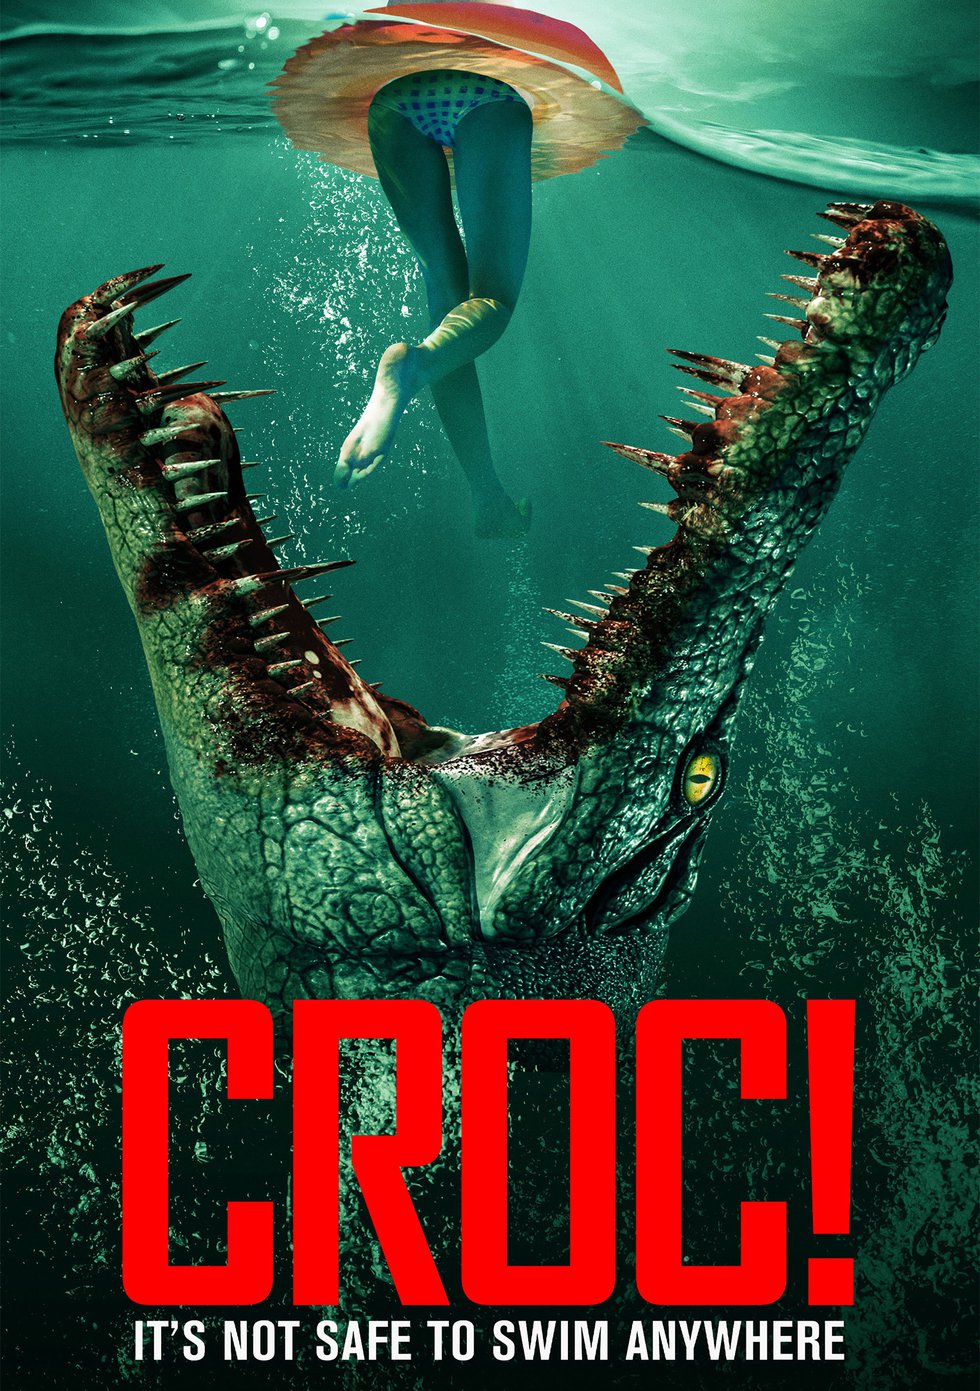 Croc! Horror Film